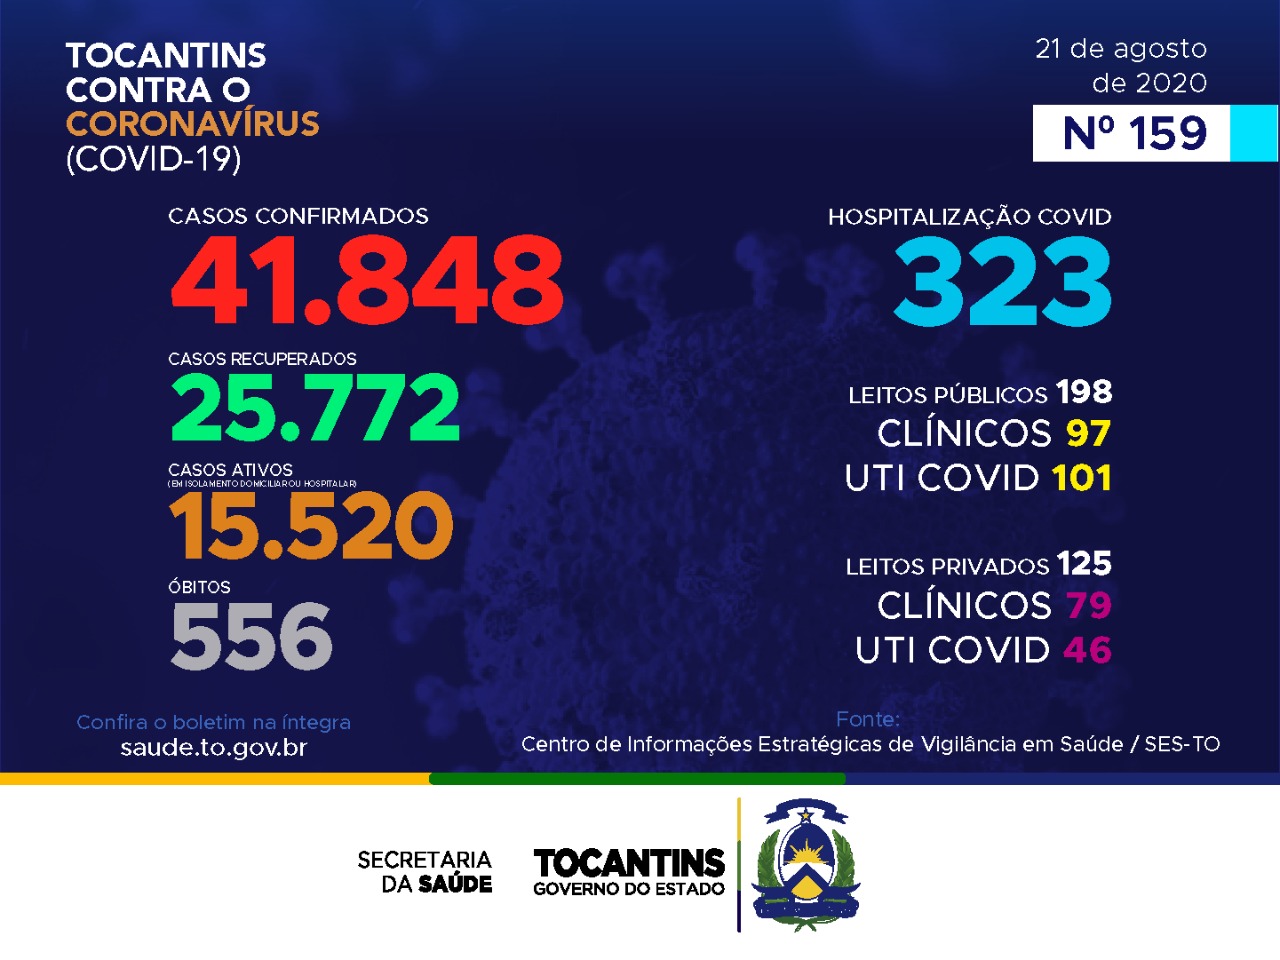 Coronavírus: Tocantins registra mais de mil casos hoje, destes, 46,7% estão entre 20 a 39 anos